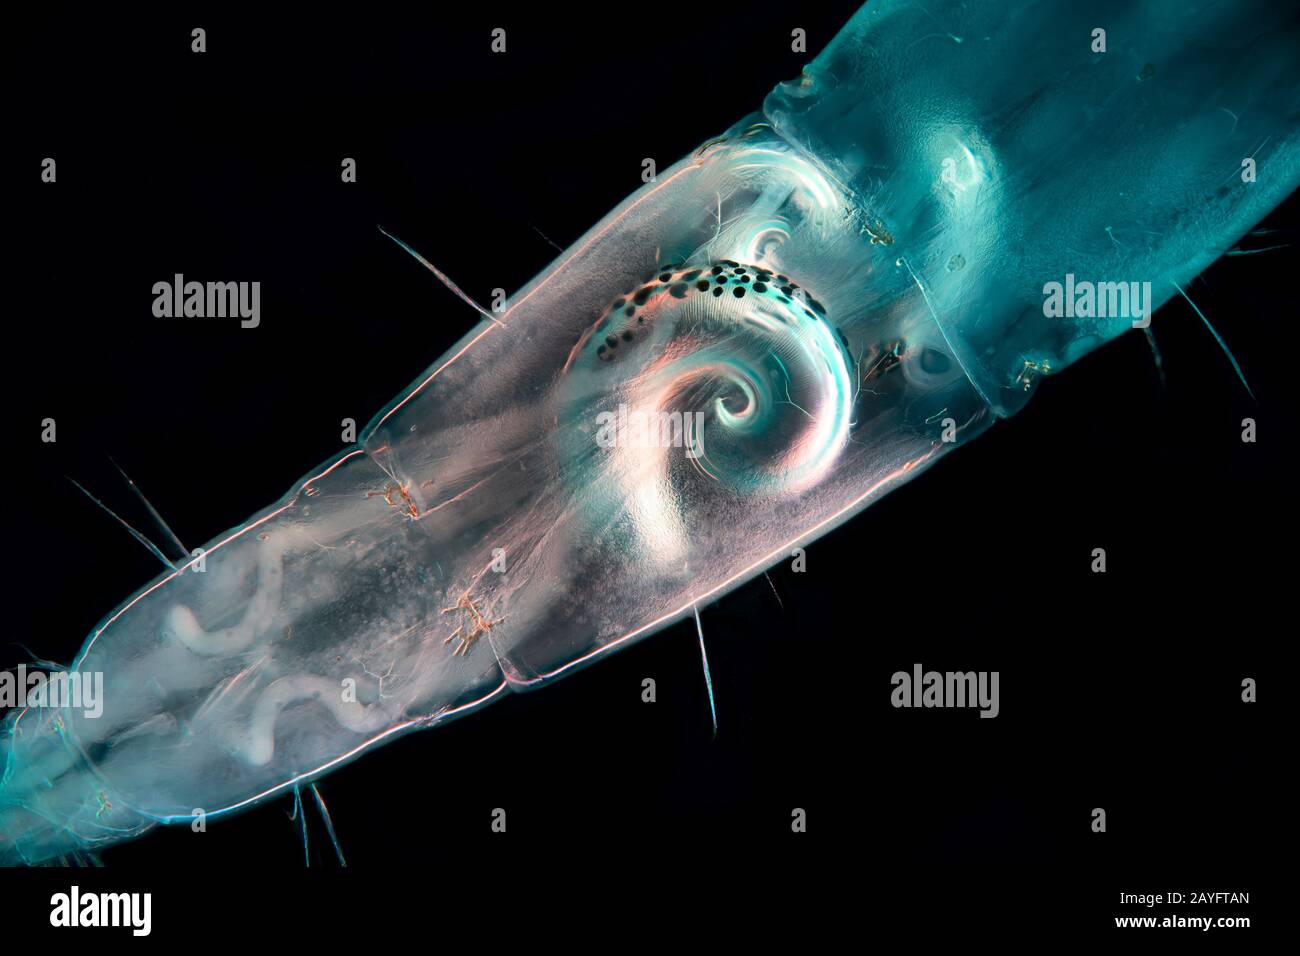 Fantôme milieu (Chaoborus spec.), microscope photo de l'abdomen d'un fantôme milieu, Allemagne Banque D'Images